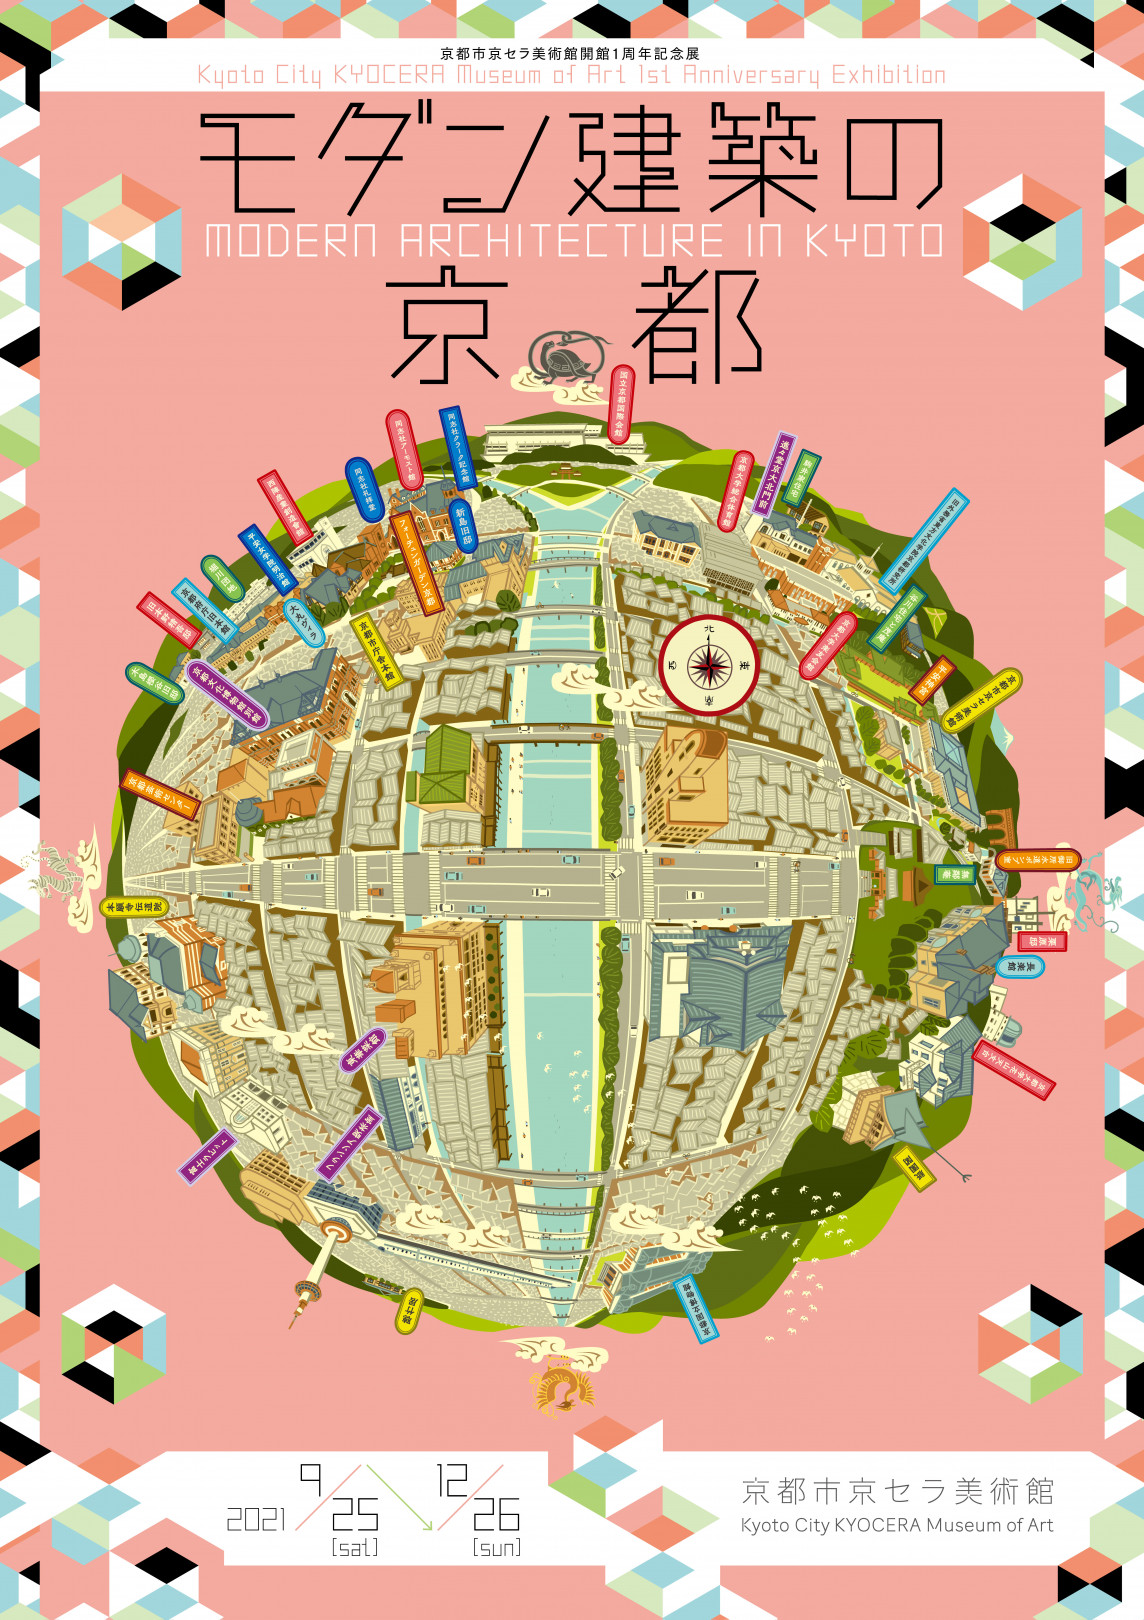 中川学のイラストによる「京都市京セラ美術館開館1周年記念展 モダン建築の京都」のポスター